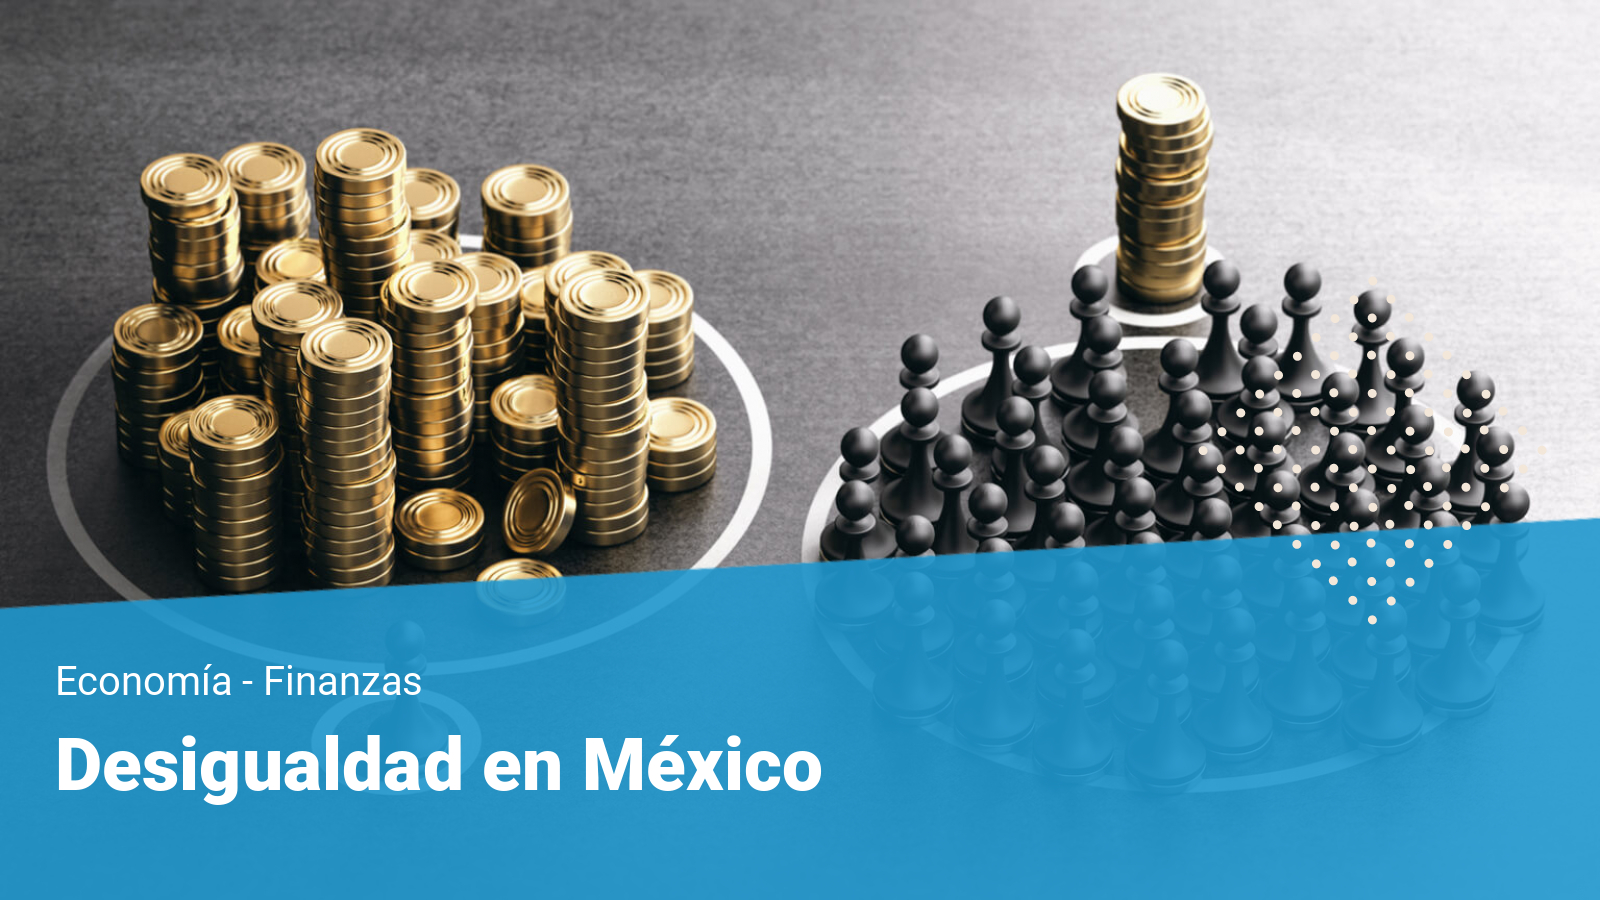 Desigualdad económica en México